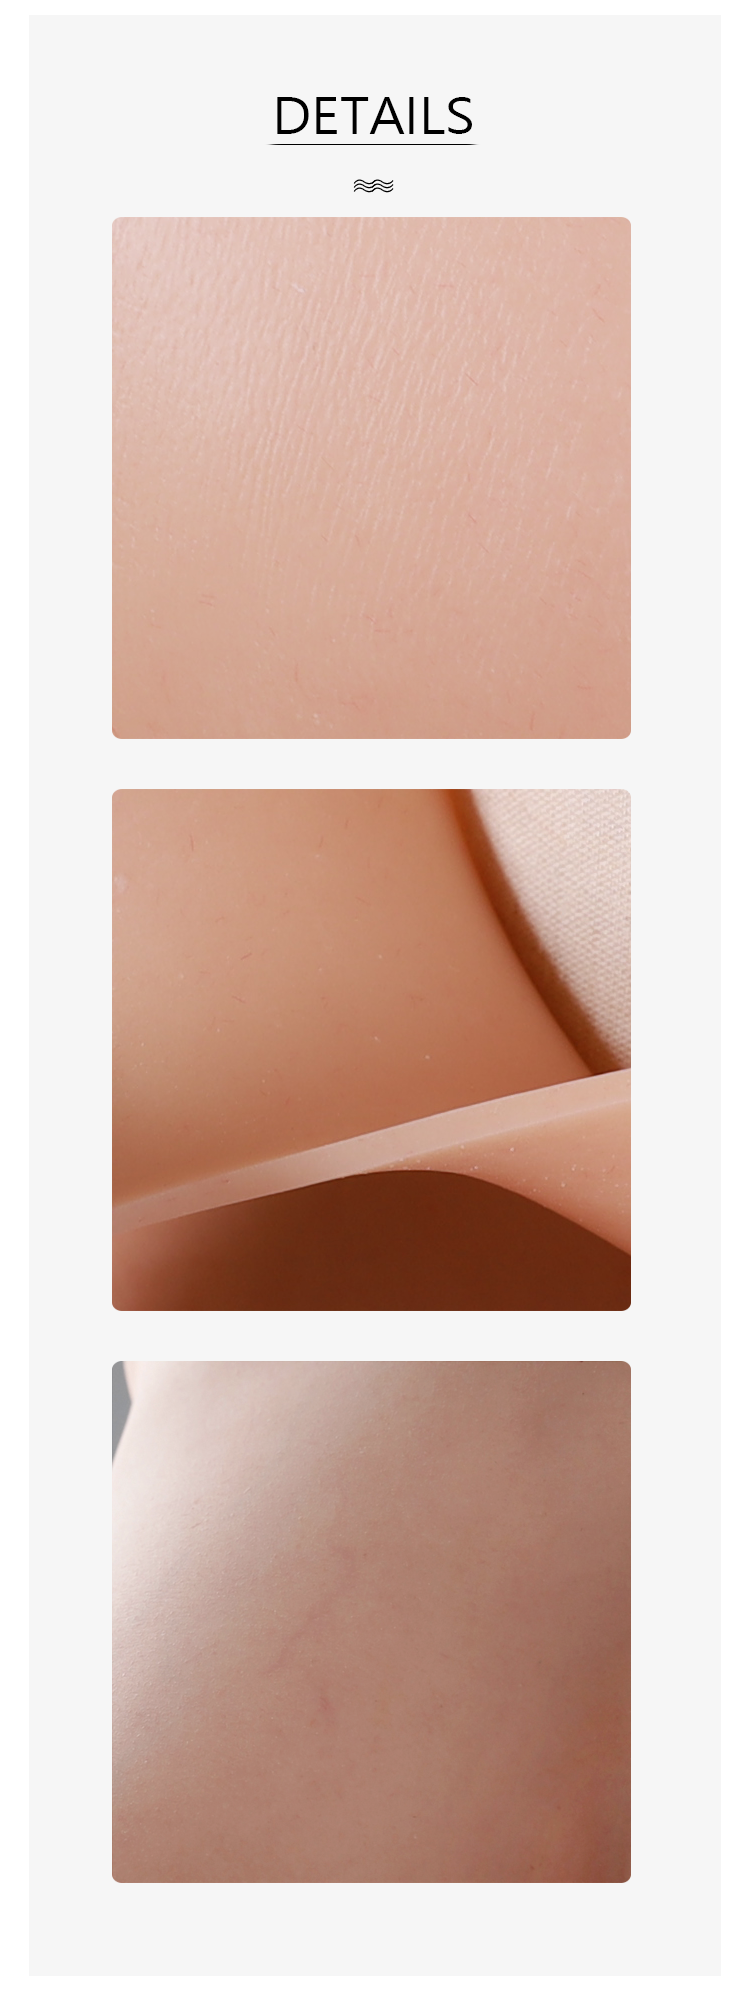 „Zero Touch“ Brüste | Silikon-Brustplatte „G“-Körbchen für Crossdresser 